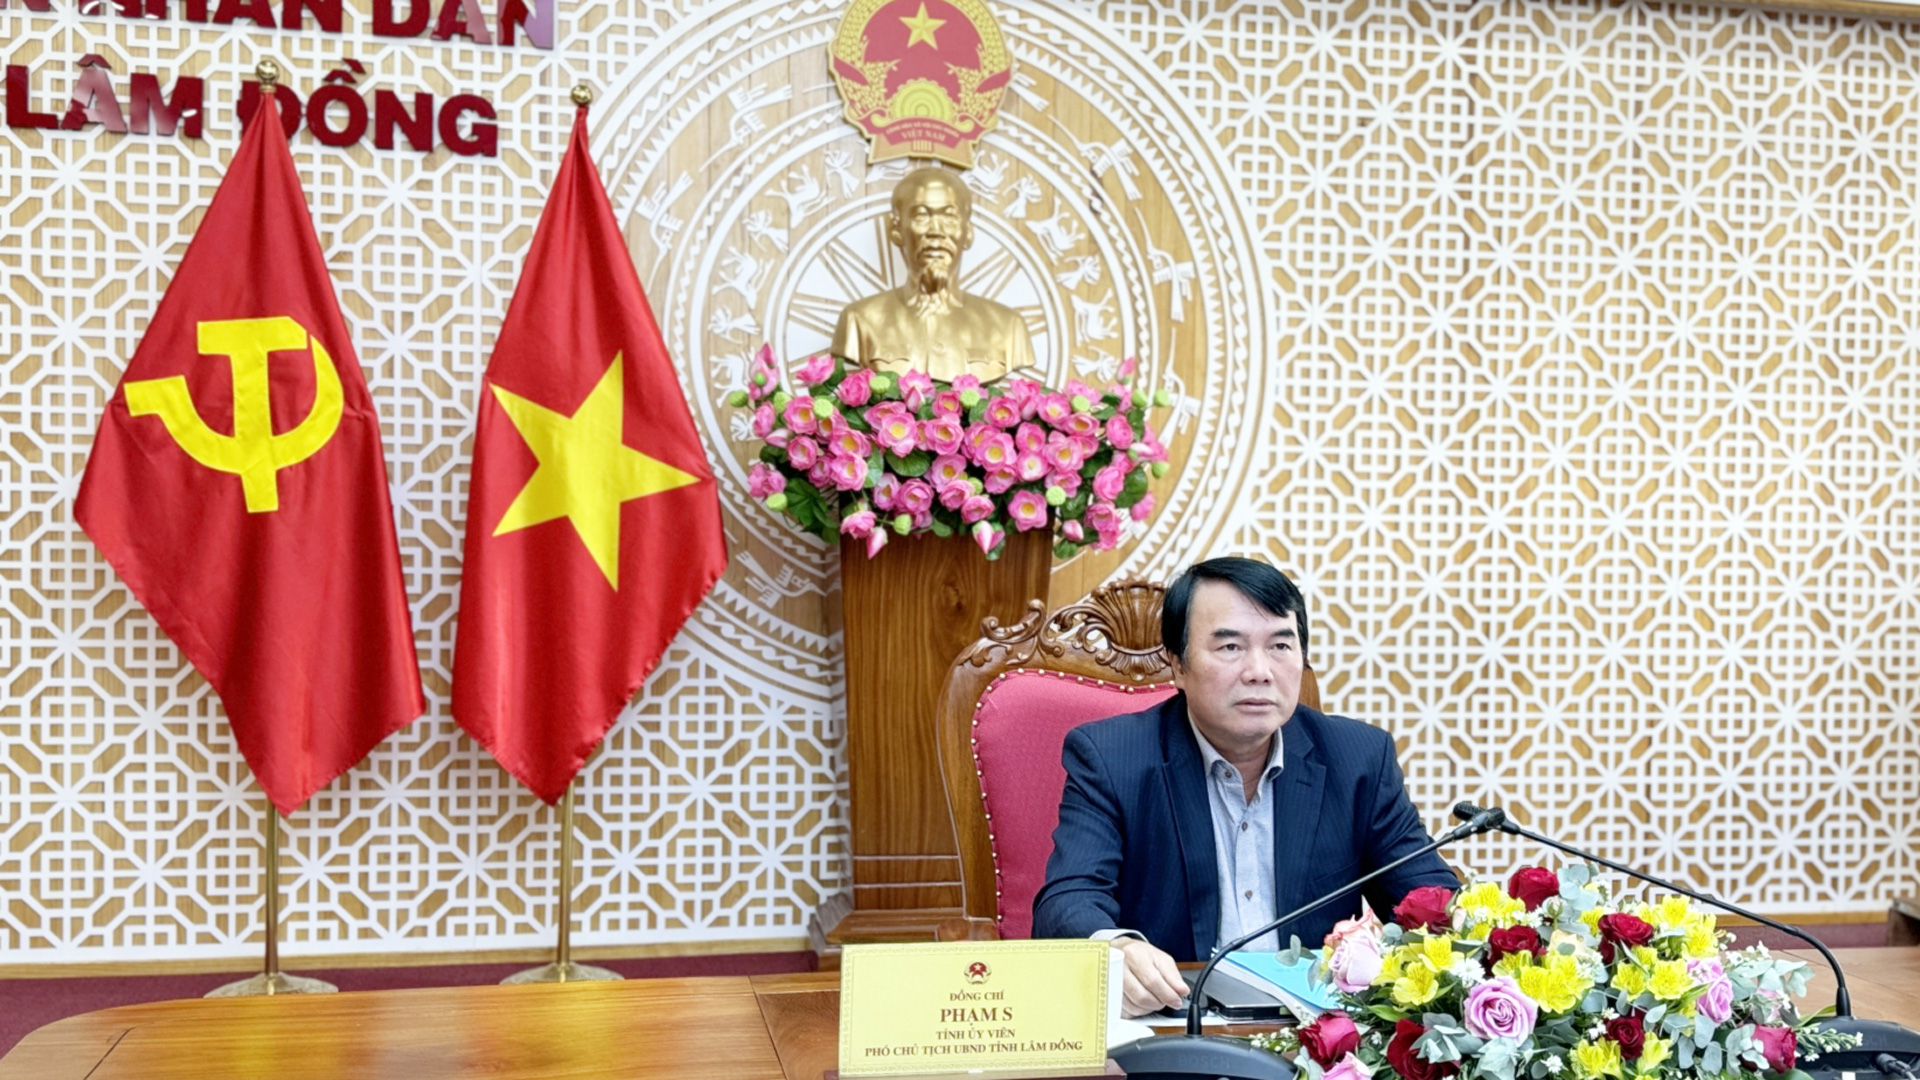 Phó Chủ tịch UBND tỉnh Lâm Đồng Phạm S chủ trì cuộc họp